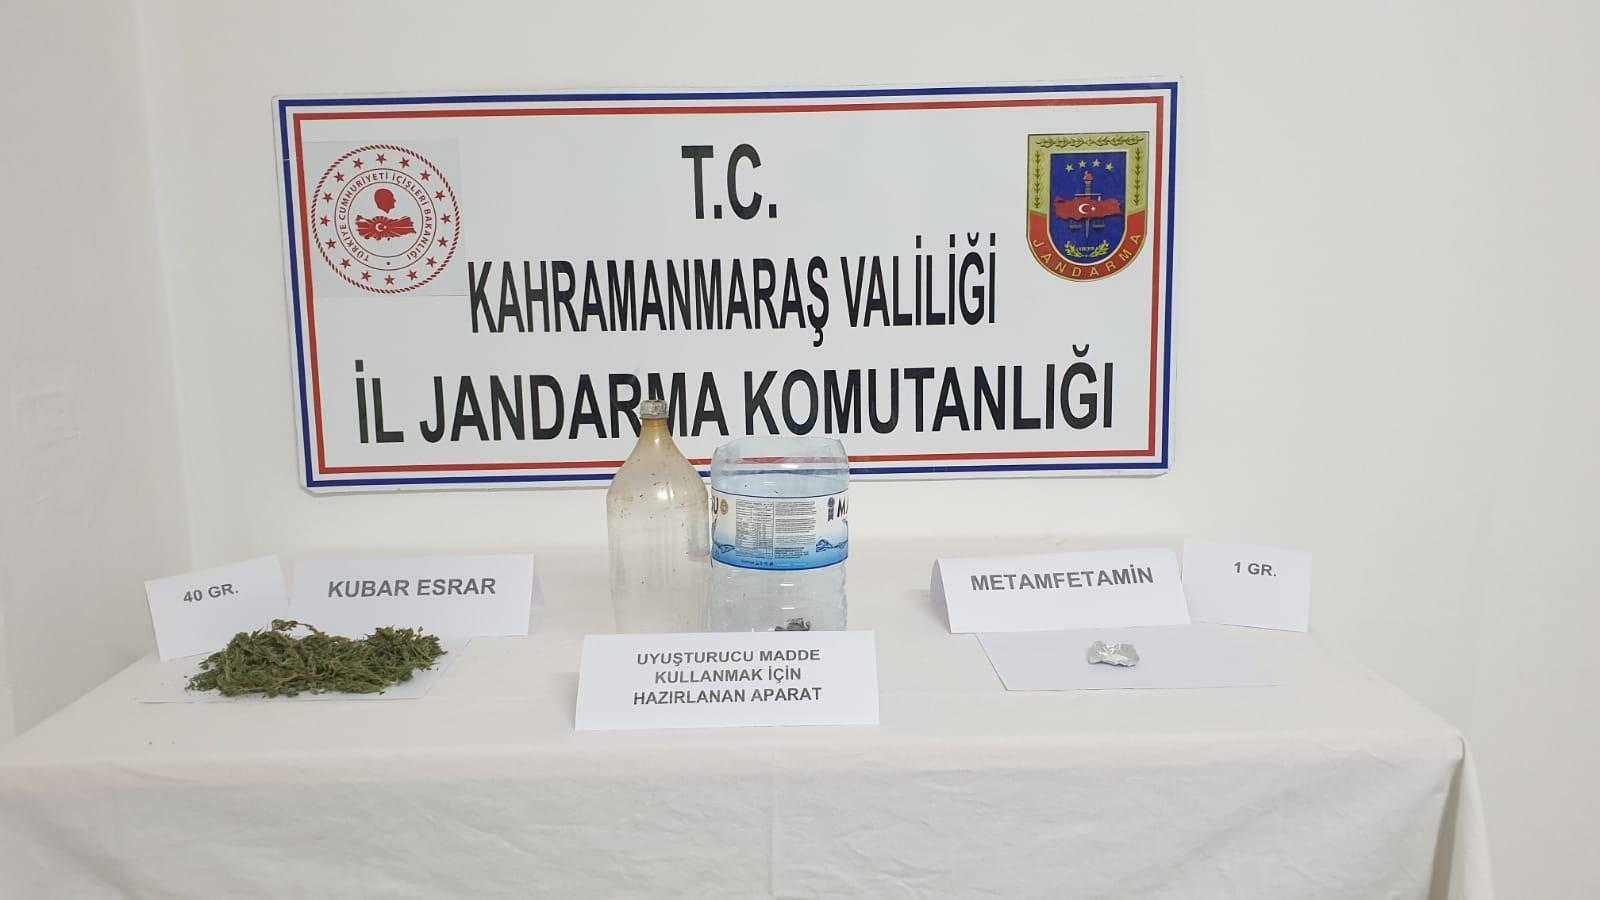 Kahramanmaraş’ta uyuşturucu operasyonu: 5 gözaltı #kahramanmaras